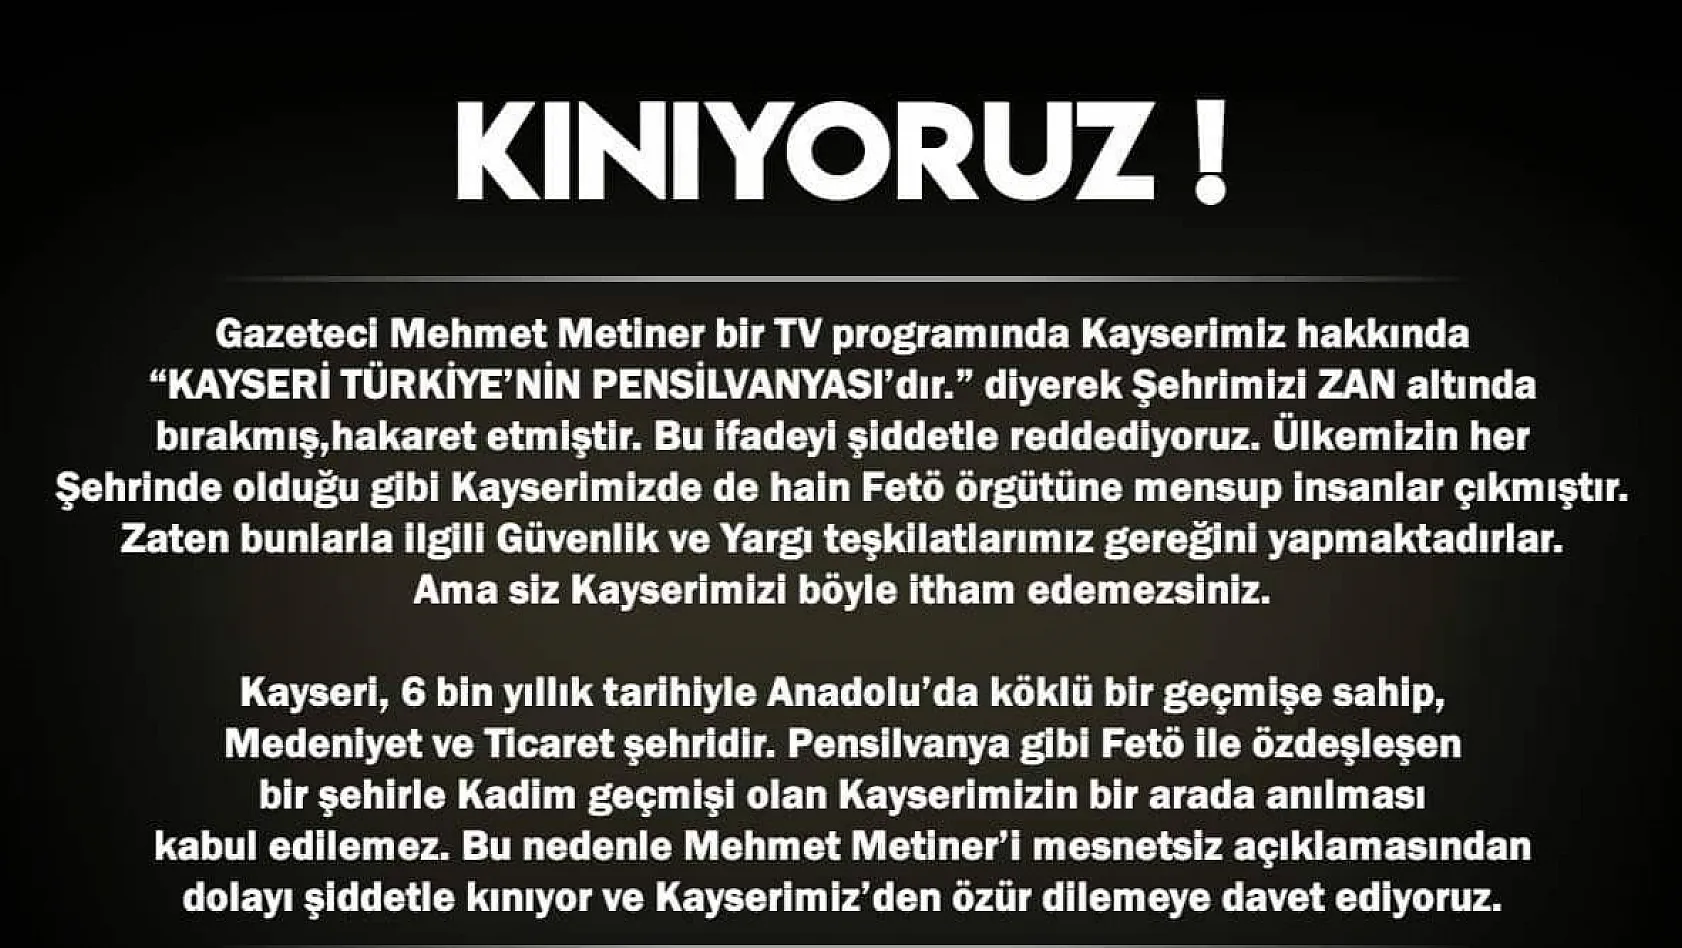 KAYFED'den AK Partili Metiner tepkisi:Kınıyoruz, özür dilemelidir 